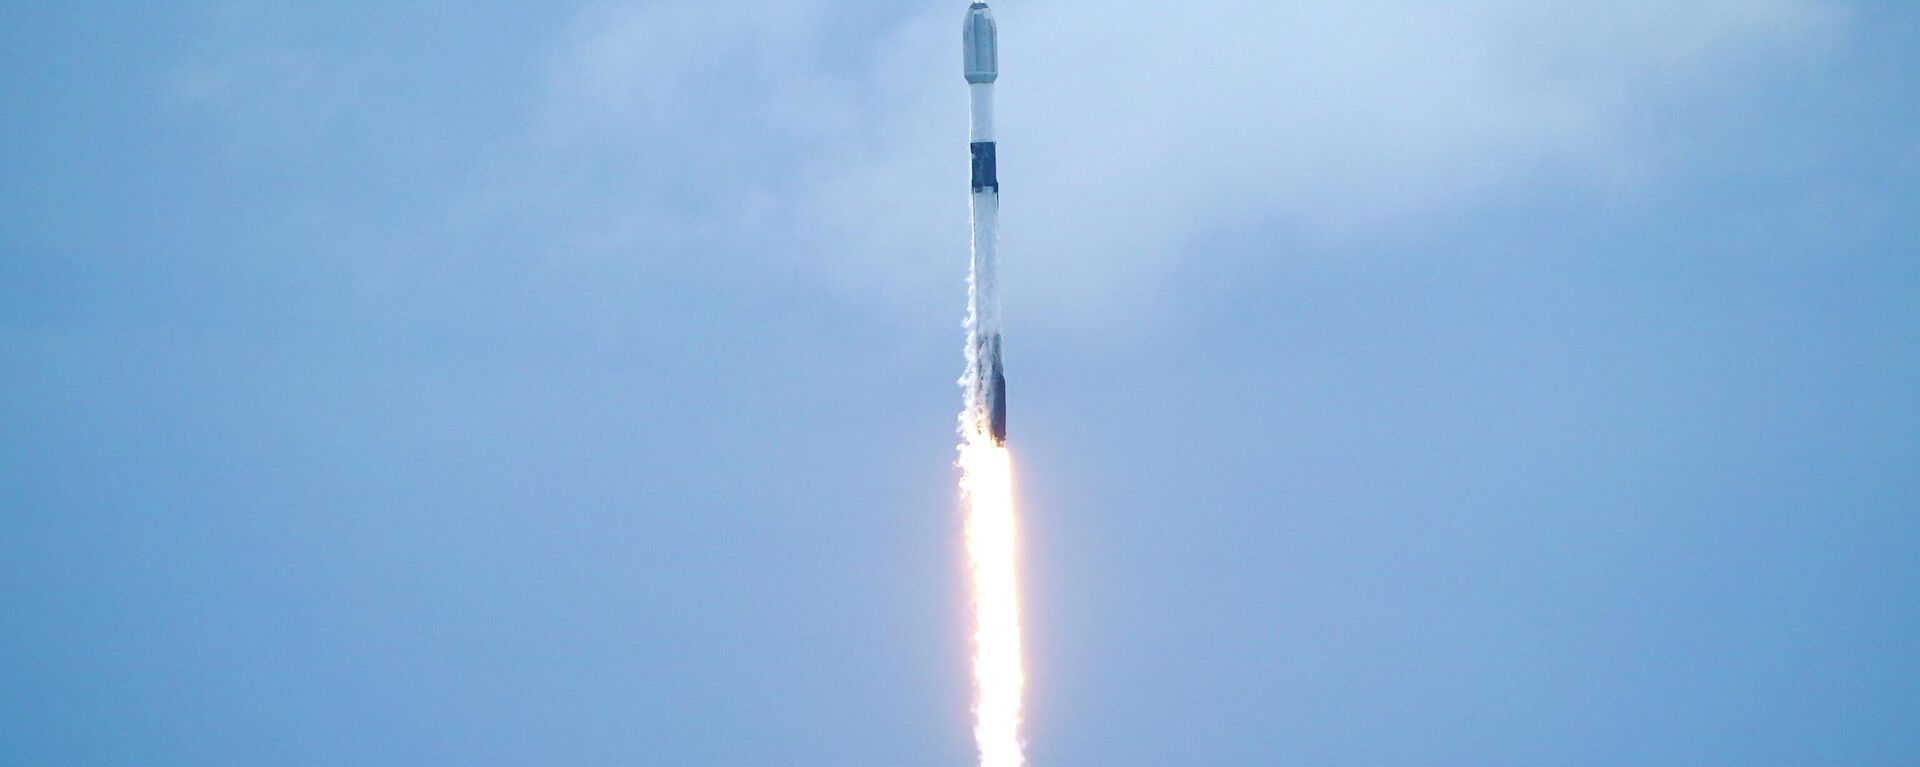 SpaceX lanza su cohete reutilizable Falcon 9 con 53 satélites de telecomunicaciones - Sputnik Mundo, 1920, 17.07.2022